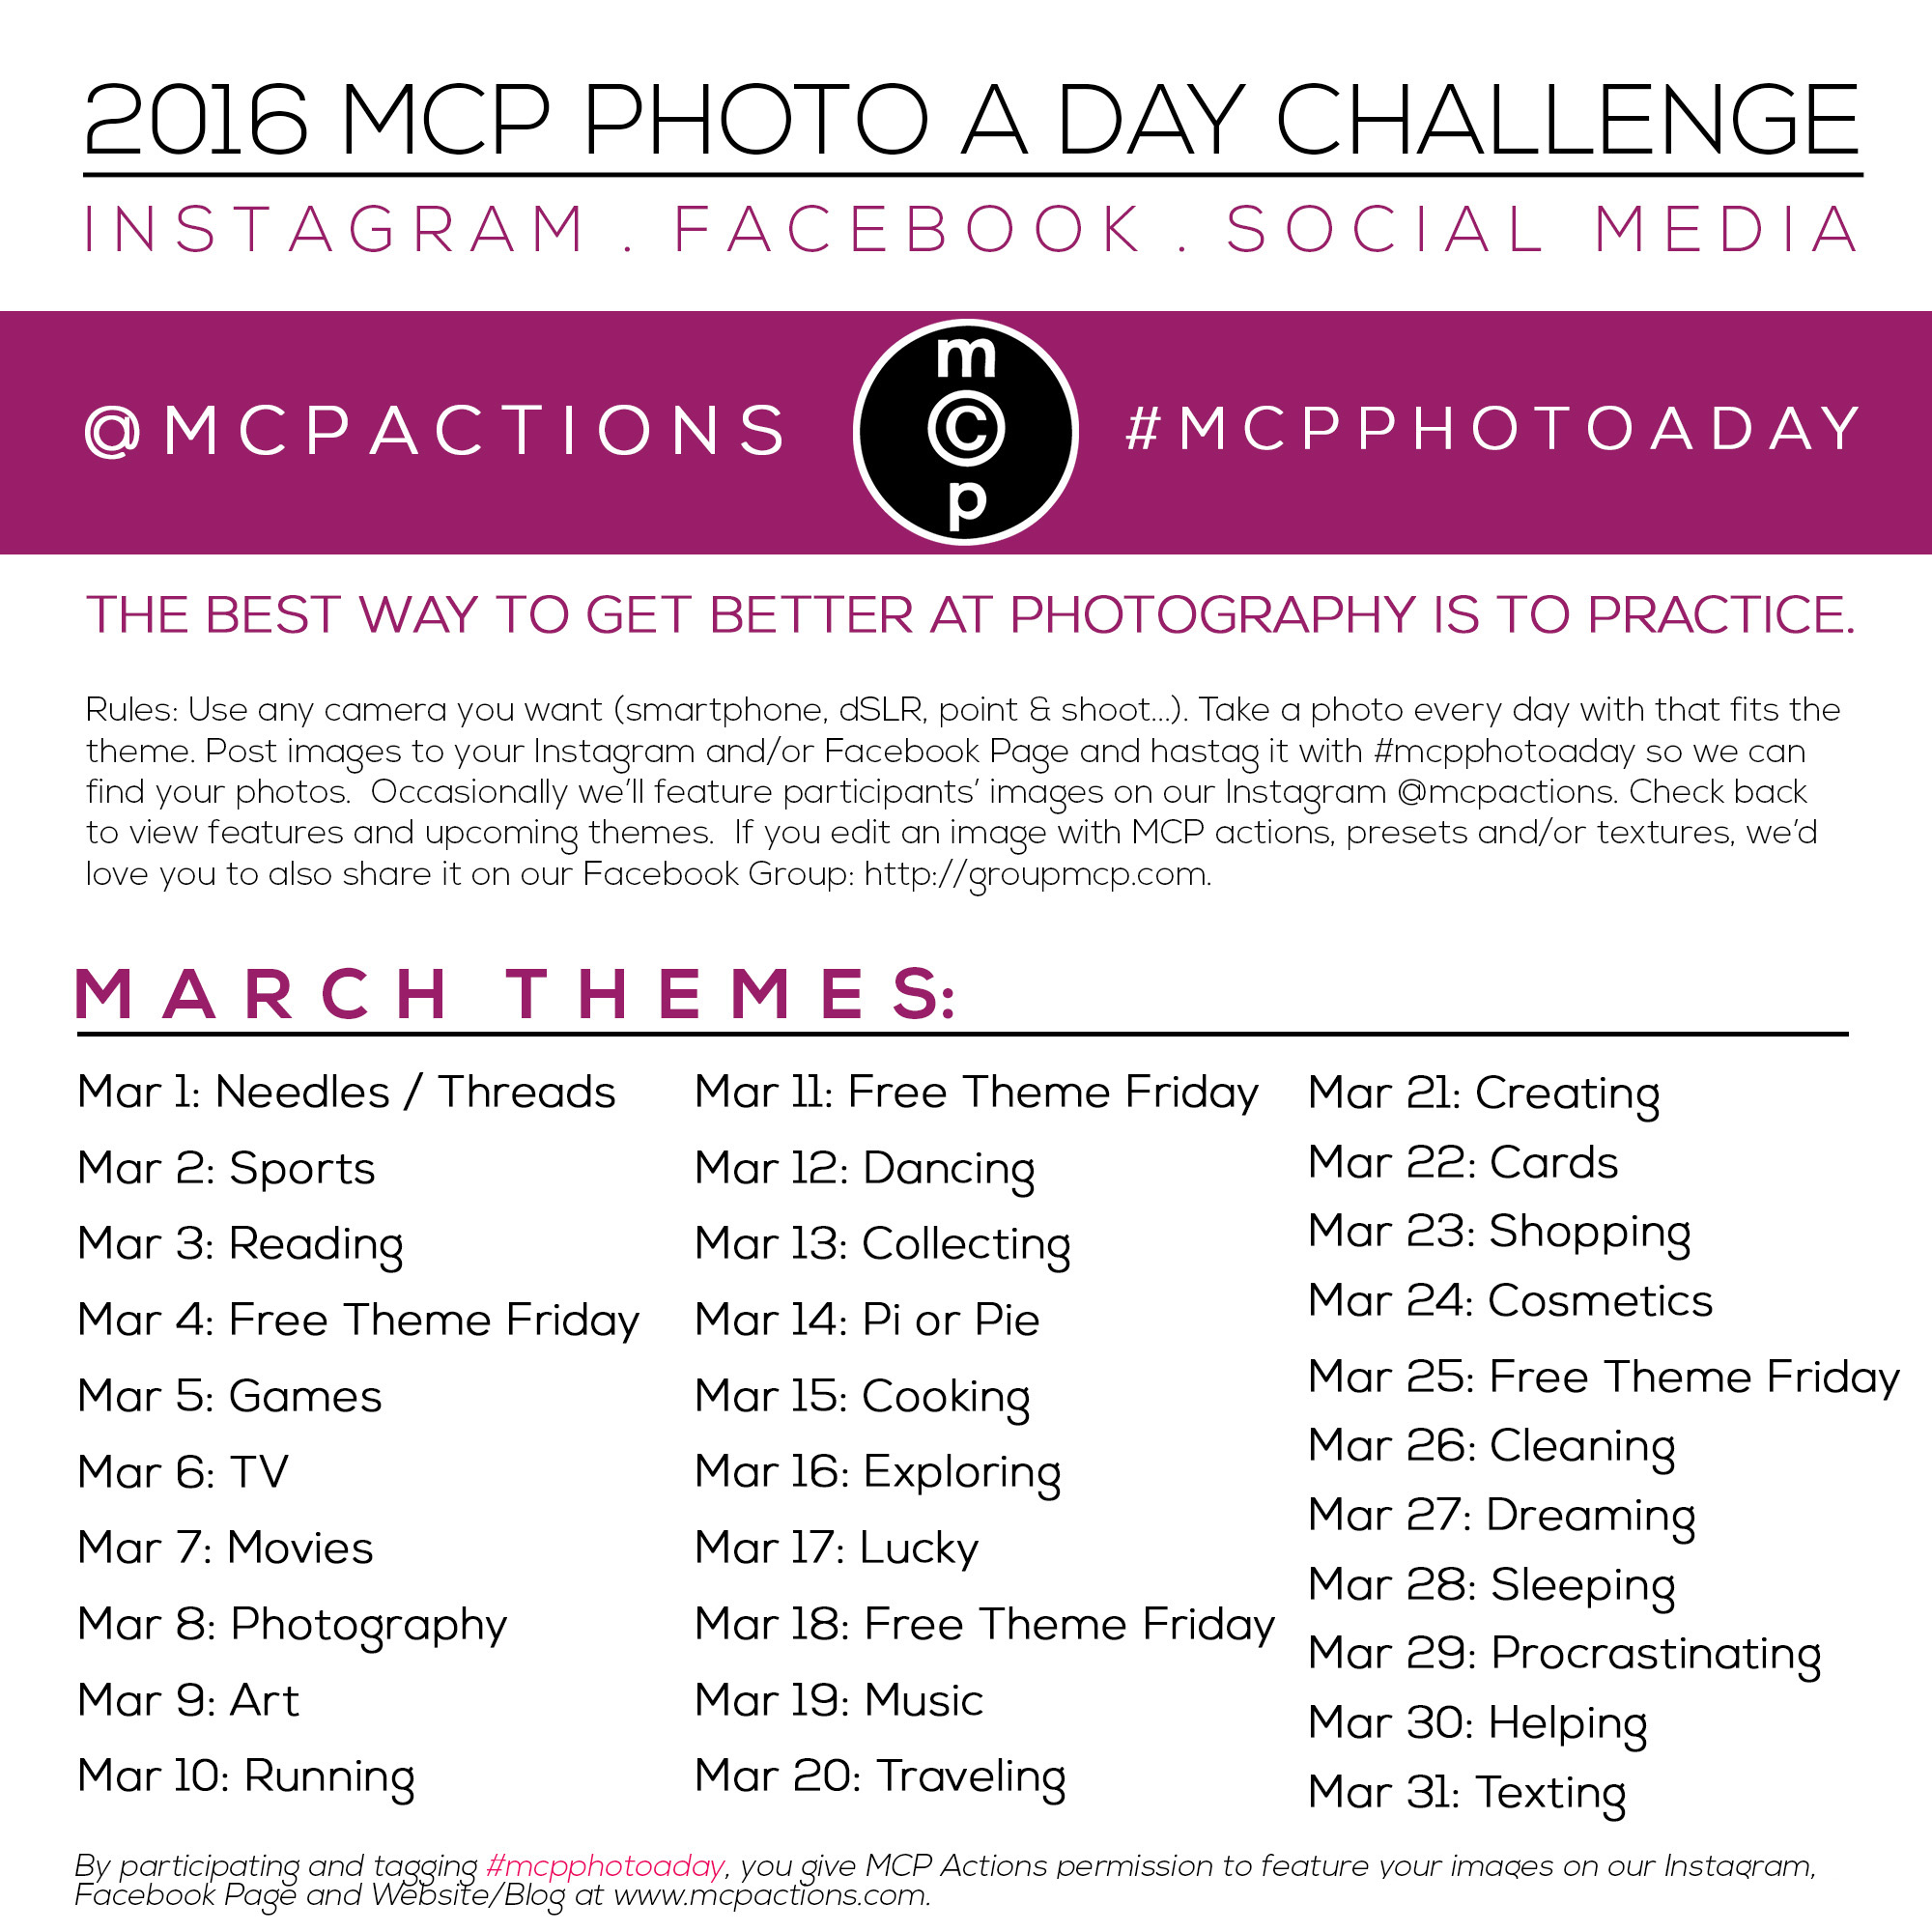 mcpphotoaday-March-2016 MCP Photo A Day Challenge. մարտ 2016 Գործունեություն Հանձնարարություններ MCP Գործողություններ sրագրեր